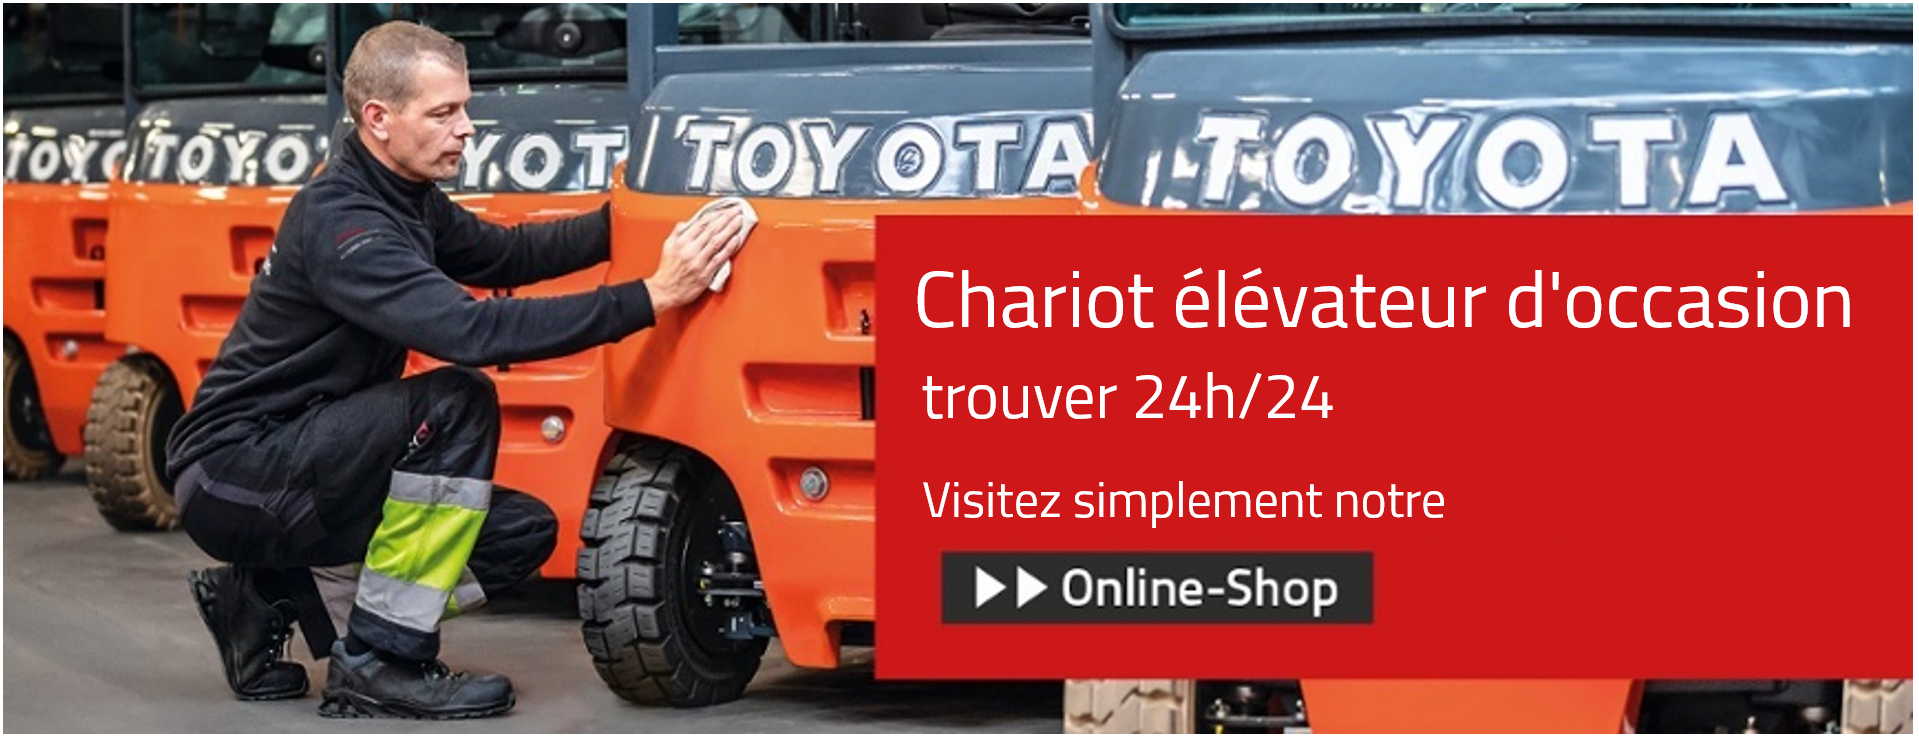 toyota material handling_chariot élévateur doccasion_image3-1